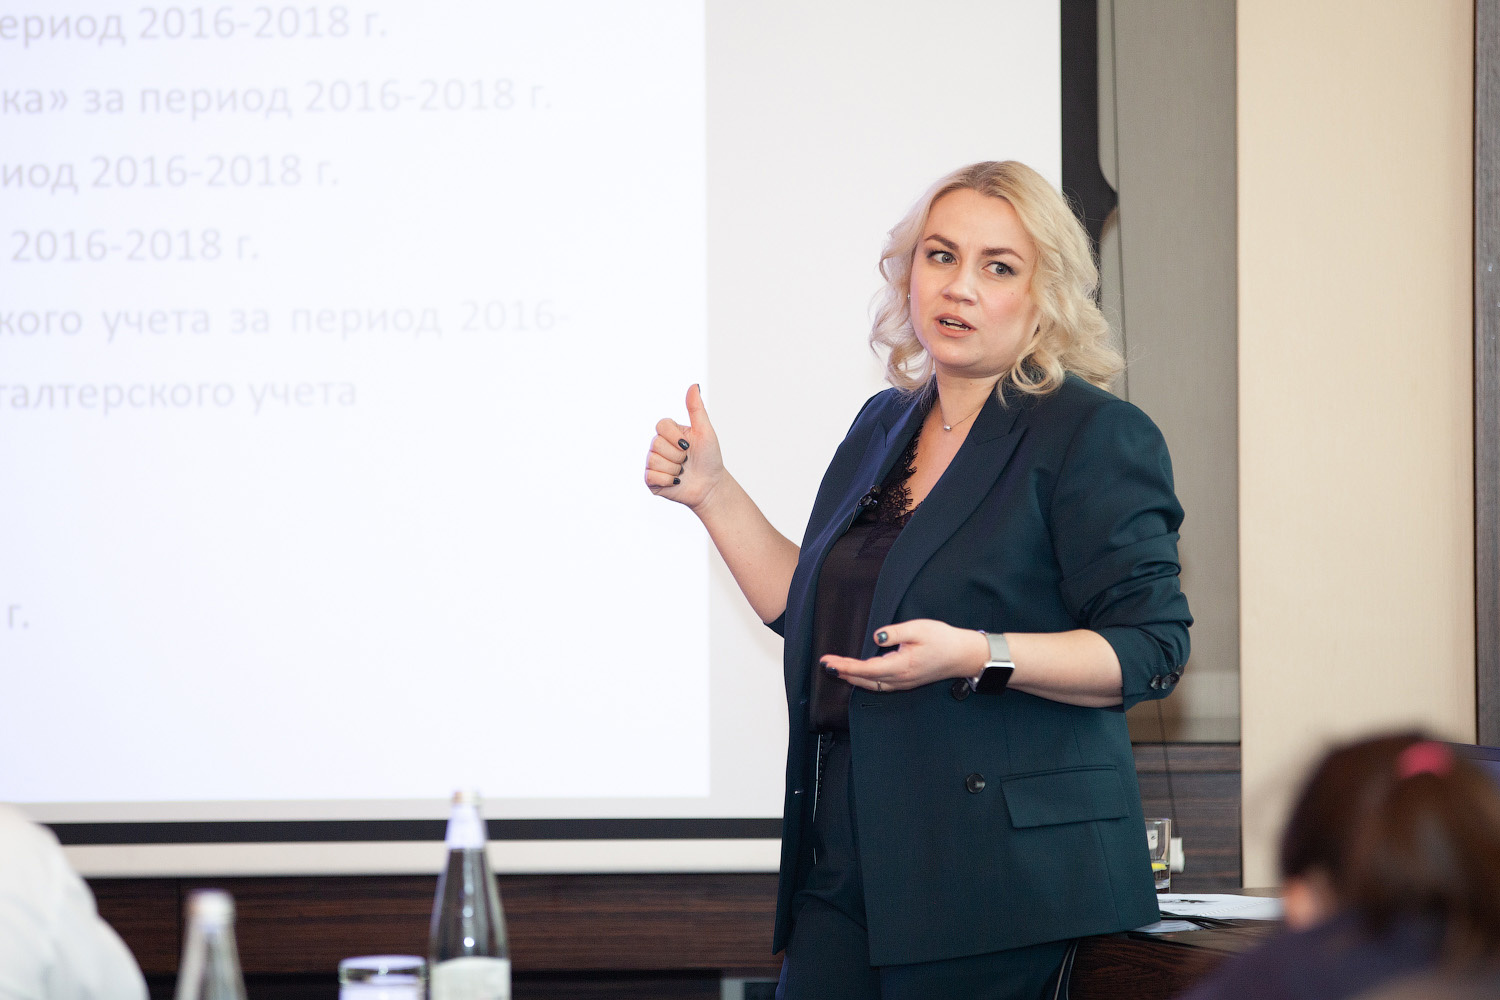 Мария Ильяшенко — ведущий налоговый юрист России, руководитель «золотой» налоговой практики (Право.ru-300, ИД «Коммерсант»)